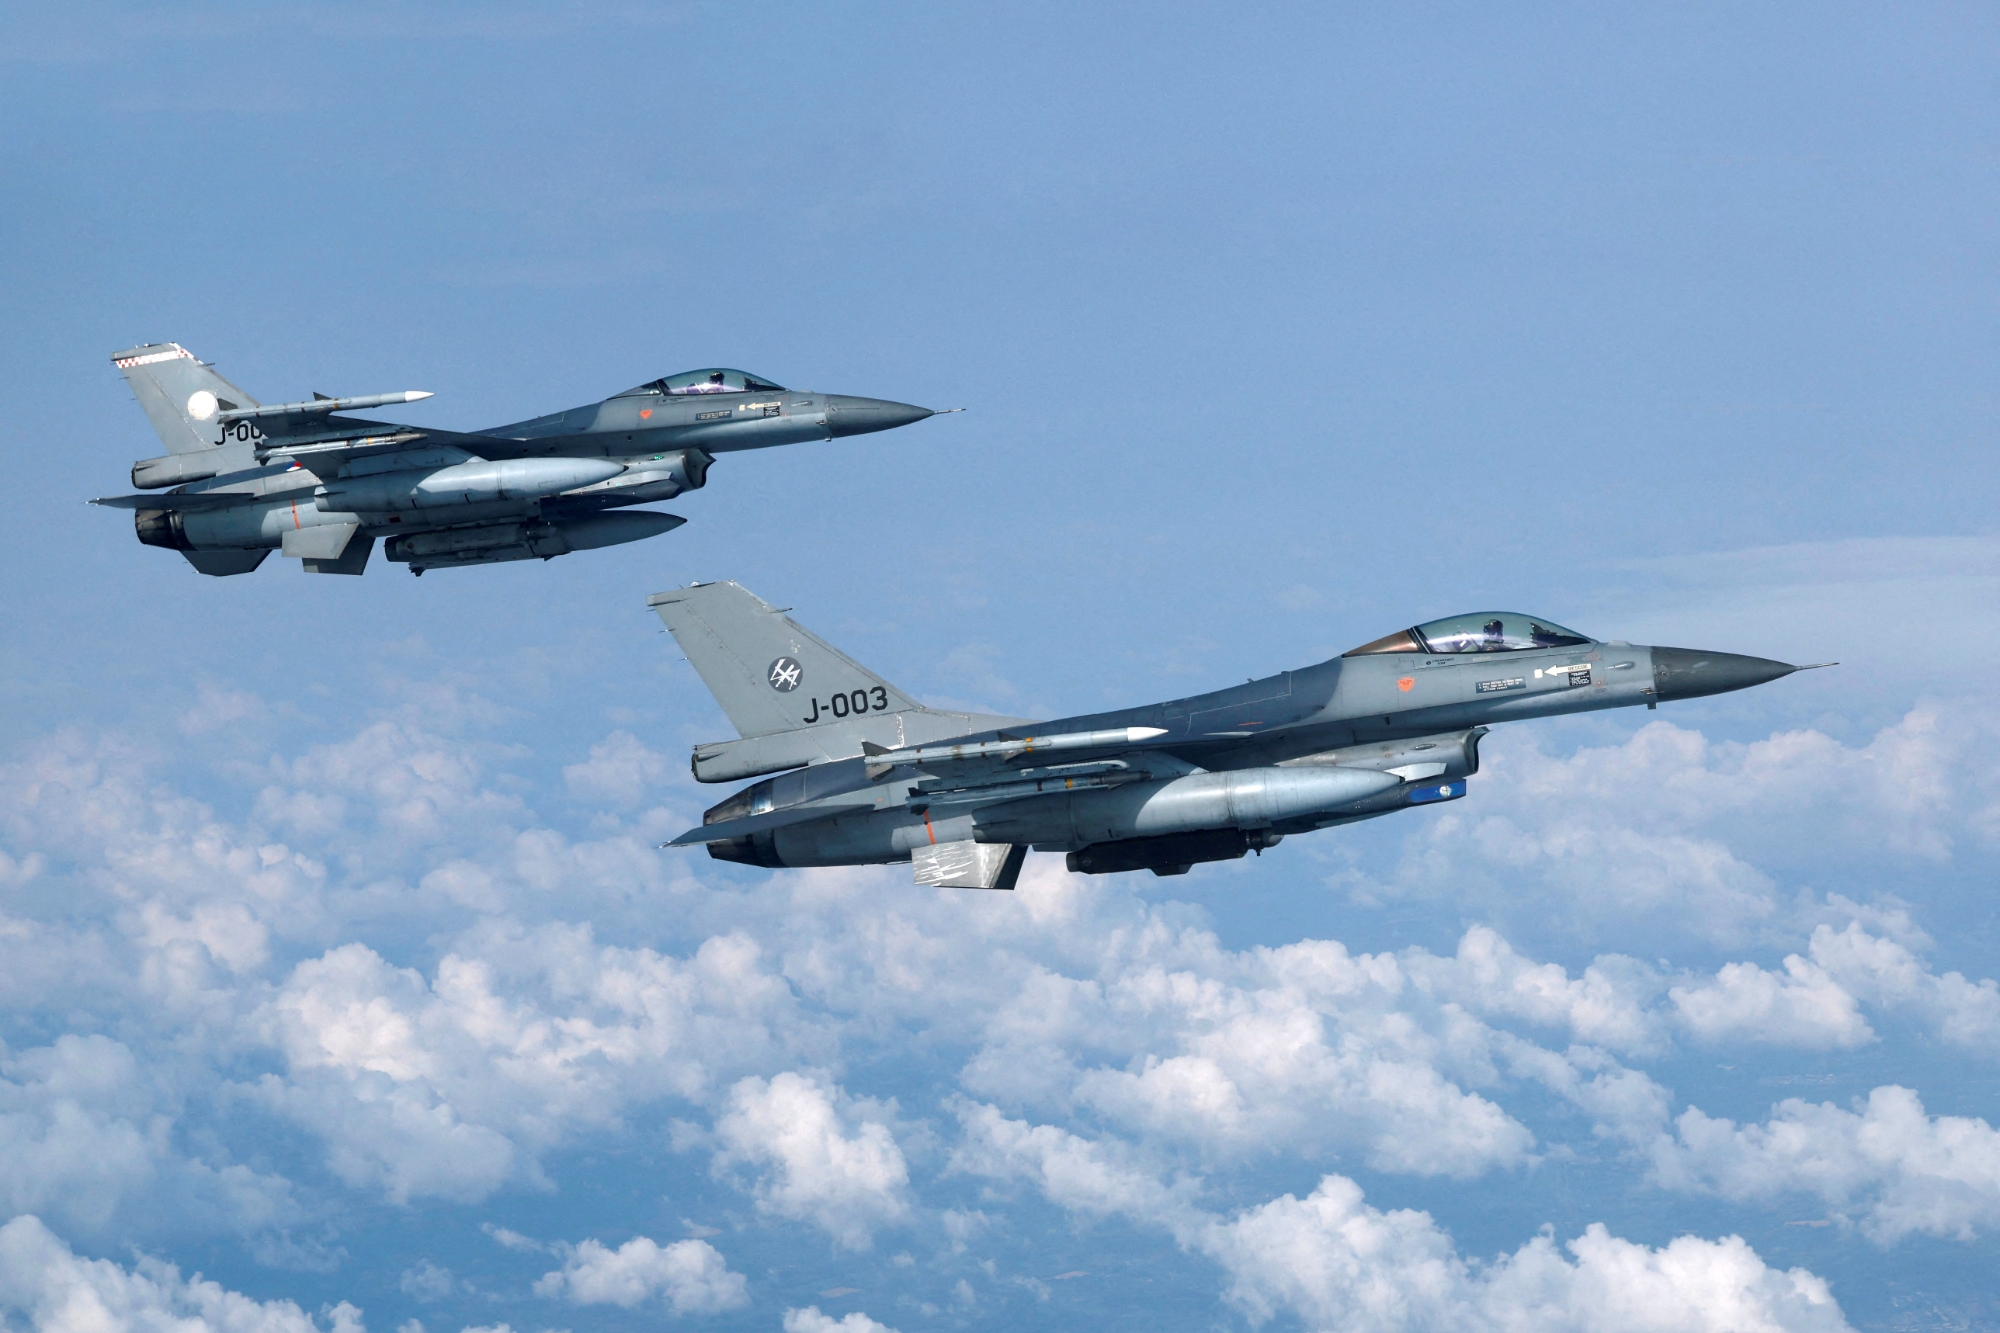 Les Pays-Bas prévoient de transférer des chasseurs F-16 Fighting Falcon à l'Ukraine cet automne